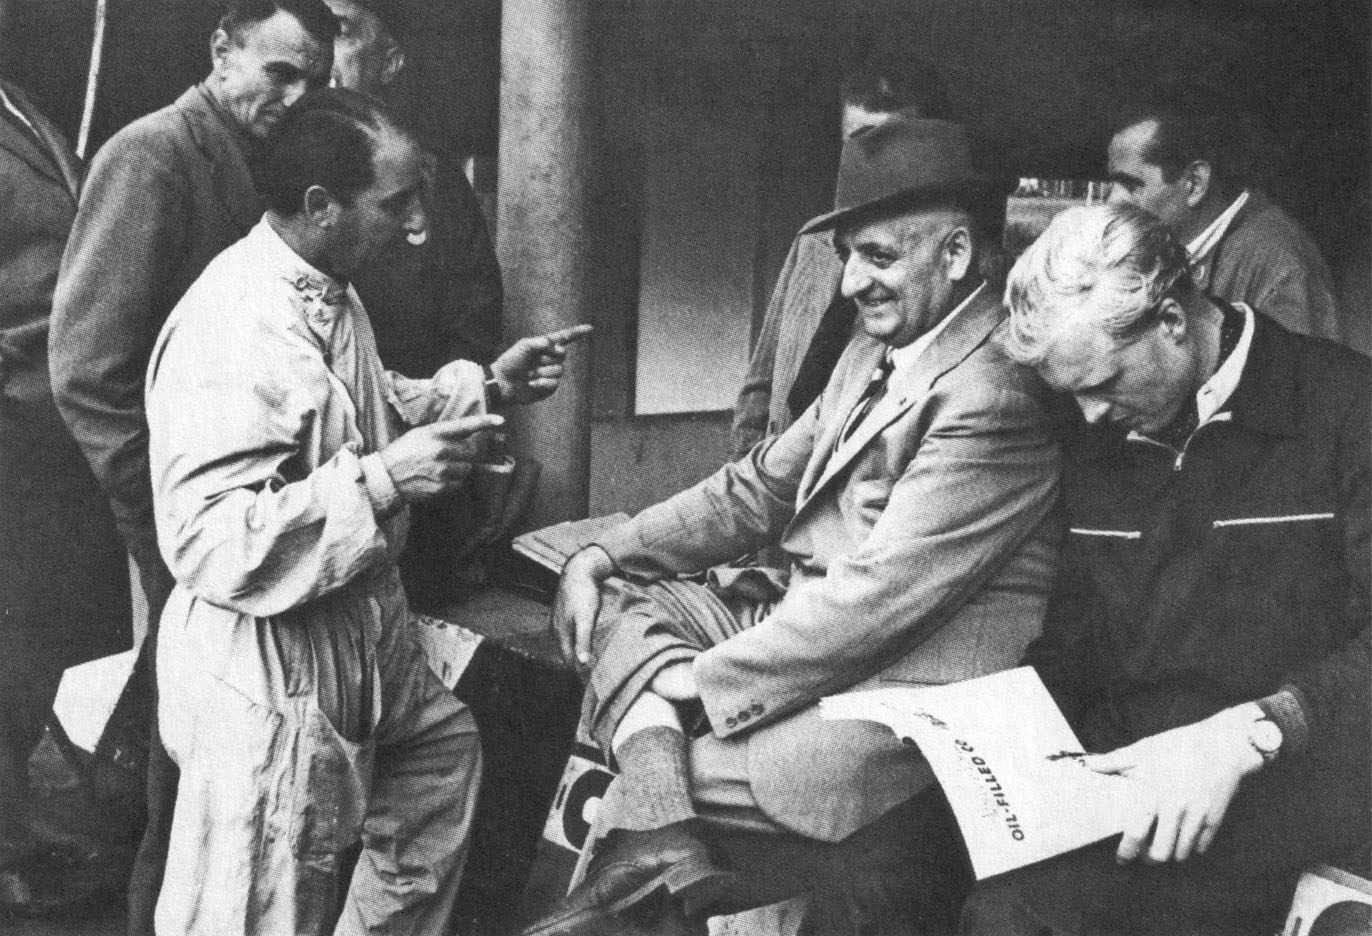 Ici à Monza en 1953, à droite de la photo, aux côtés d'Enzo Ferrari, l'homme au chapeau. Hawthorn était bien apprécié du Commendatore.